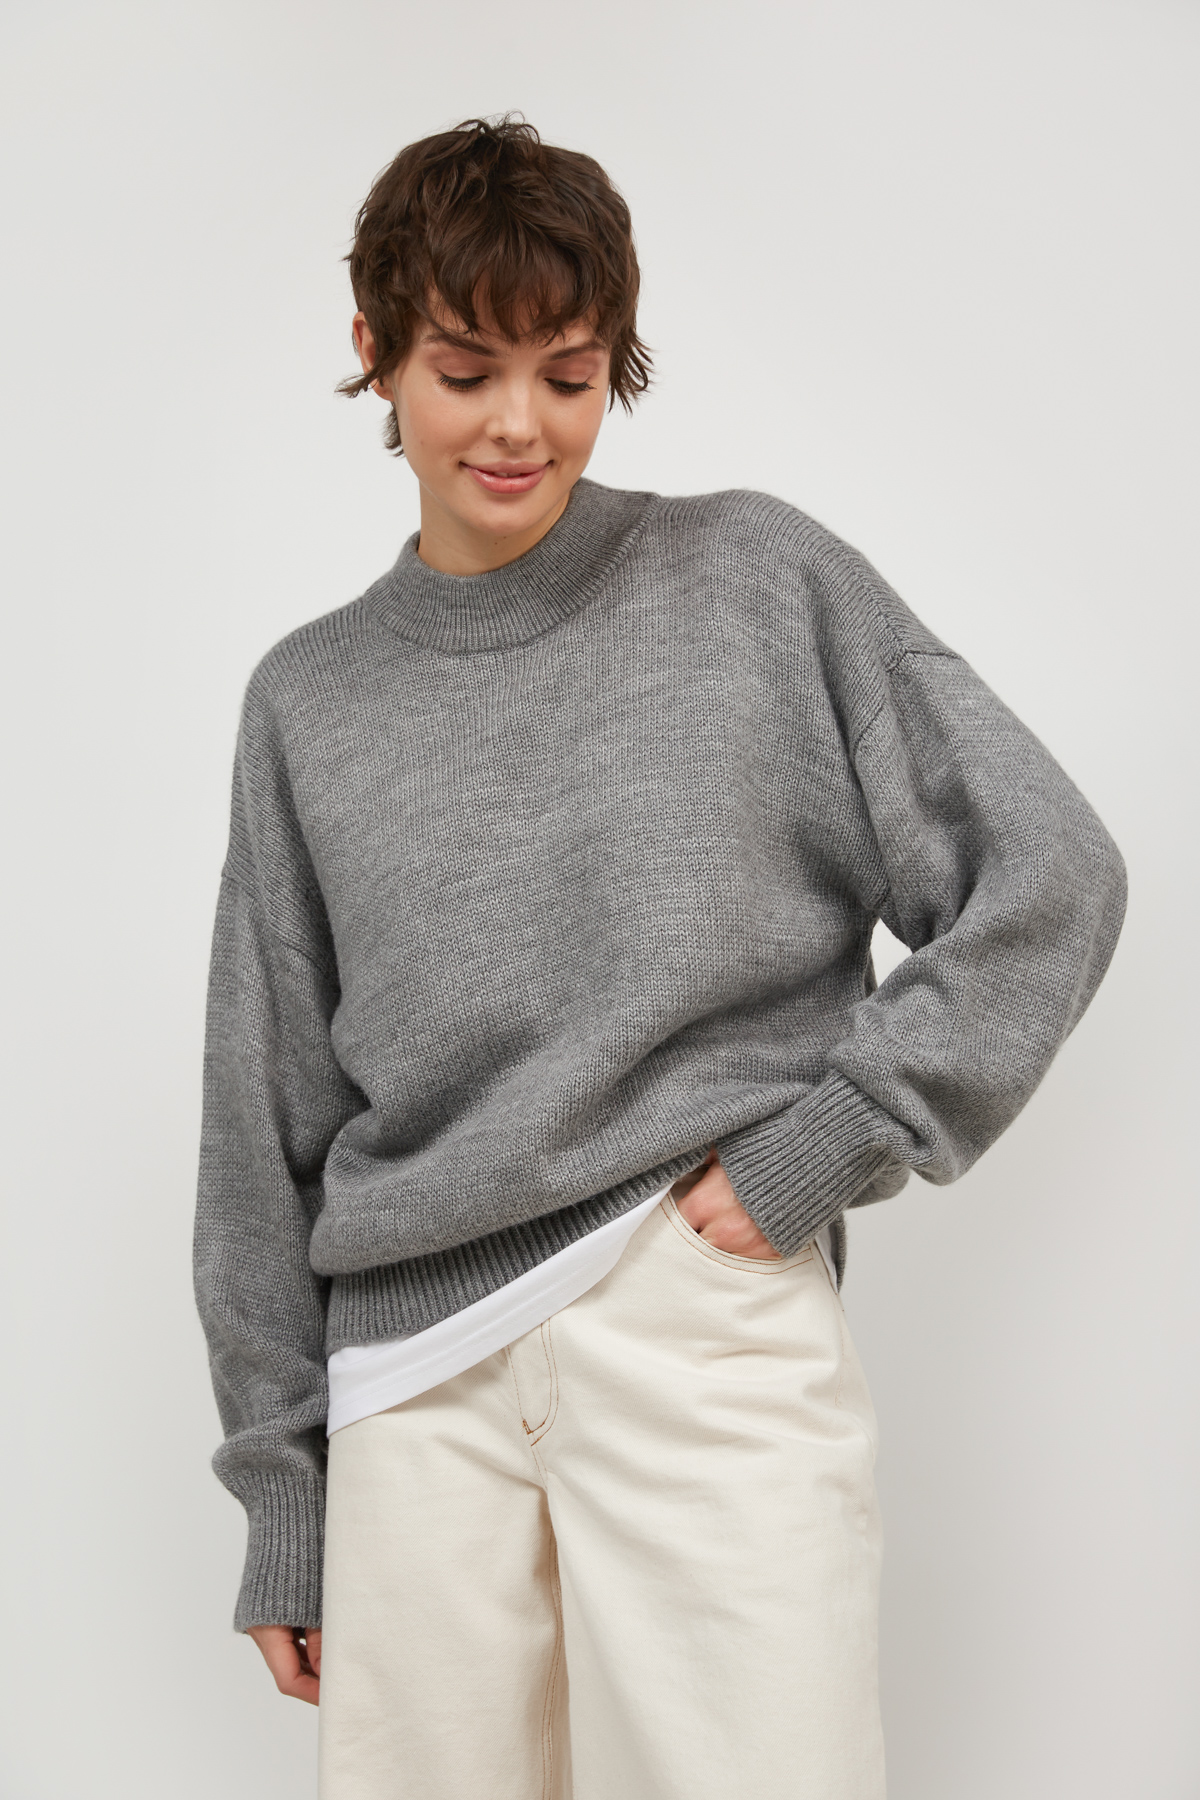 Gray knit sweater, photo 3